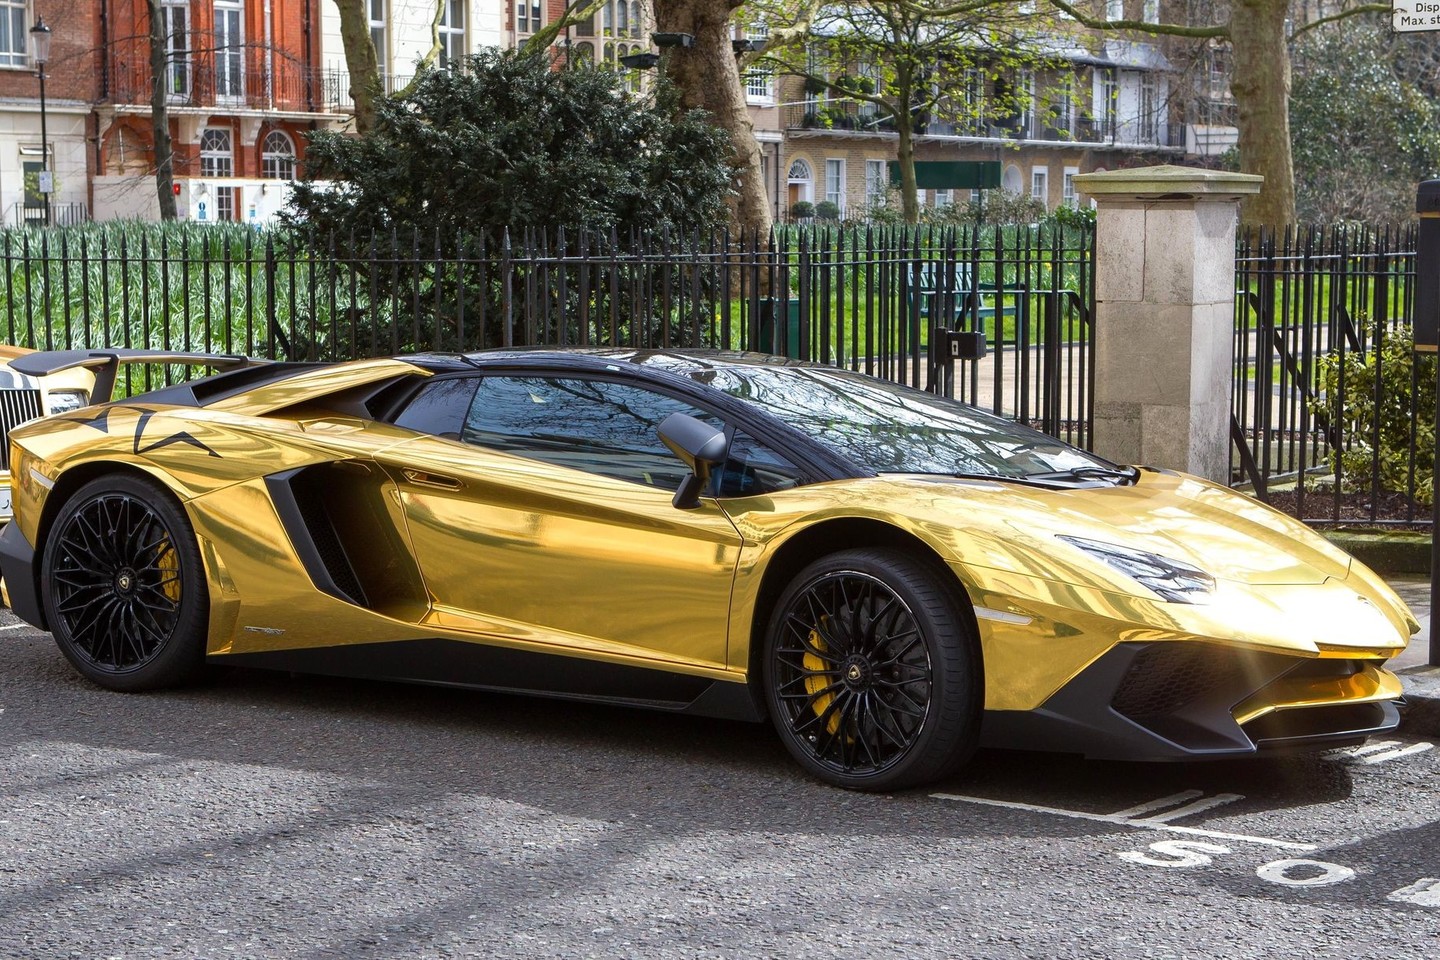 Auksiniai Saudo Arabijos milijardieriaus automobiliai nustebino net visko mačiusius londoniečius.<br>VidaPress nuotr.